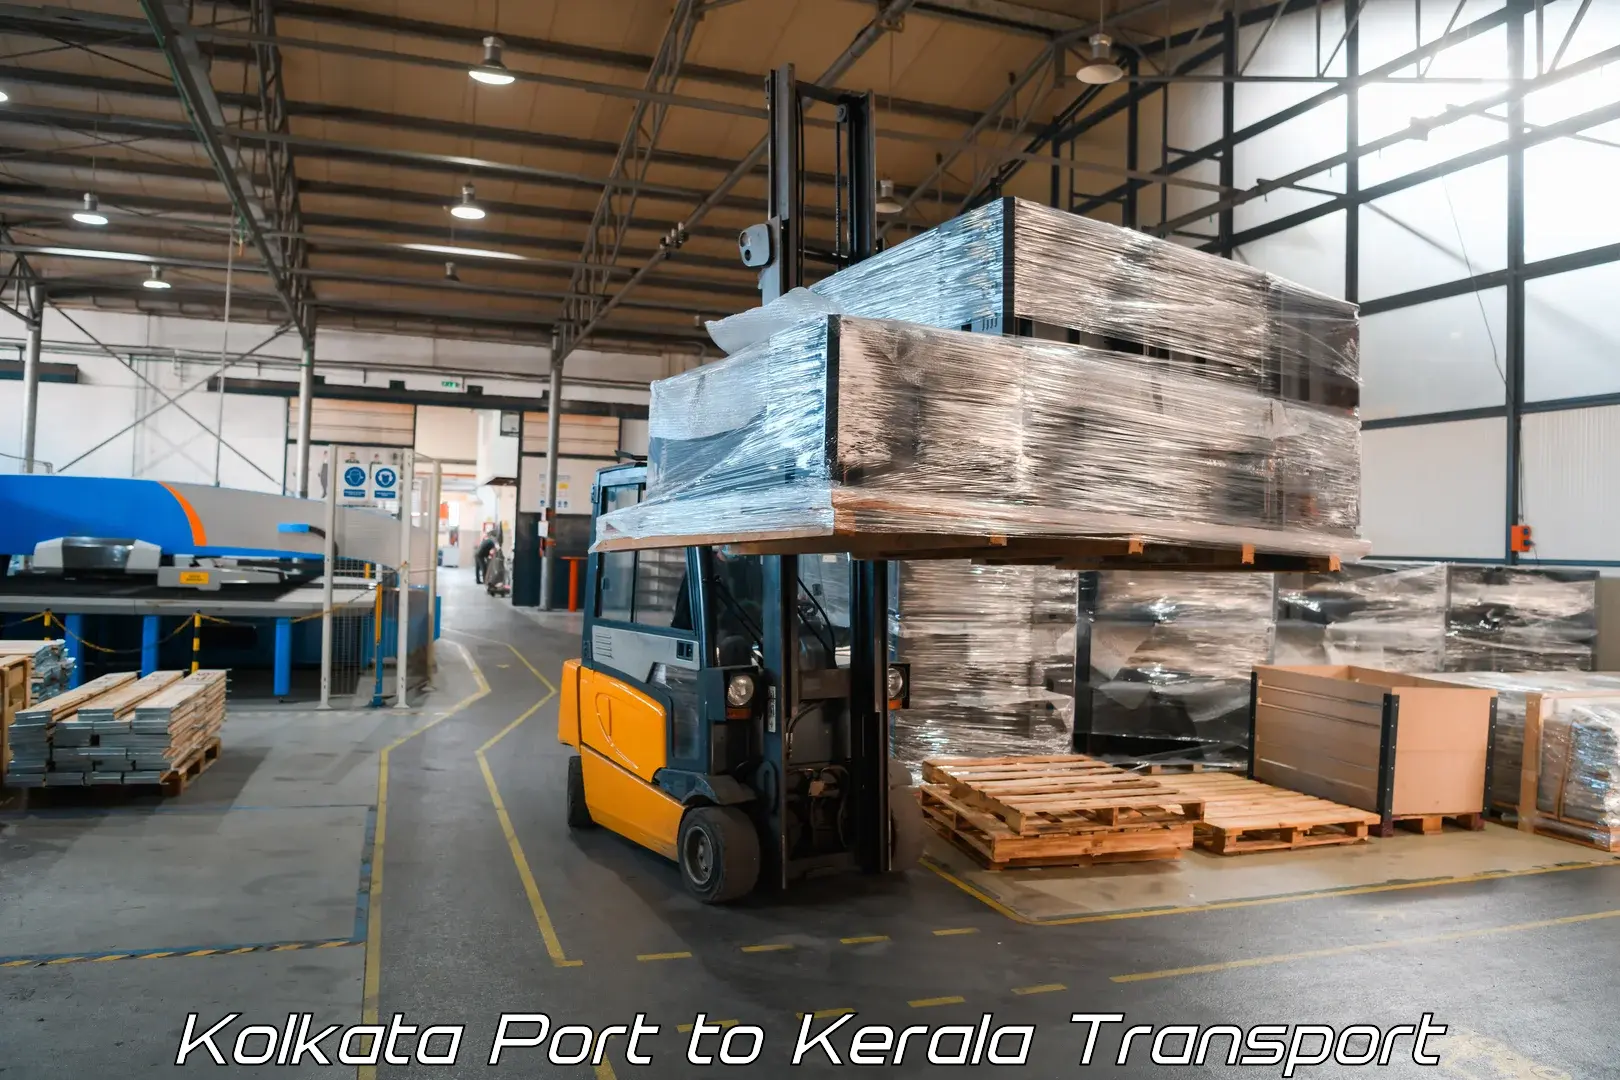 Transport services Kolkata Port to Kondotty